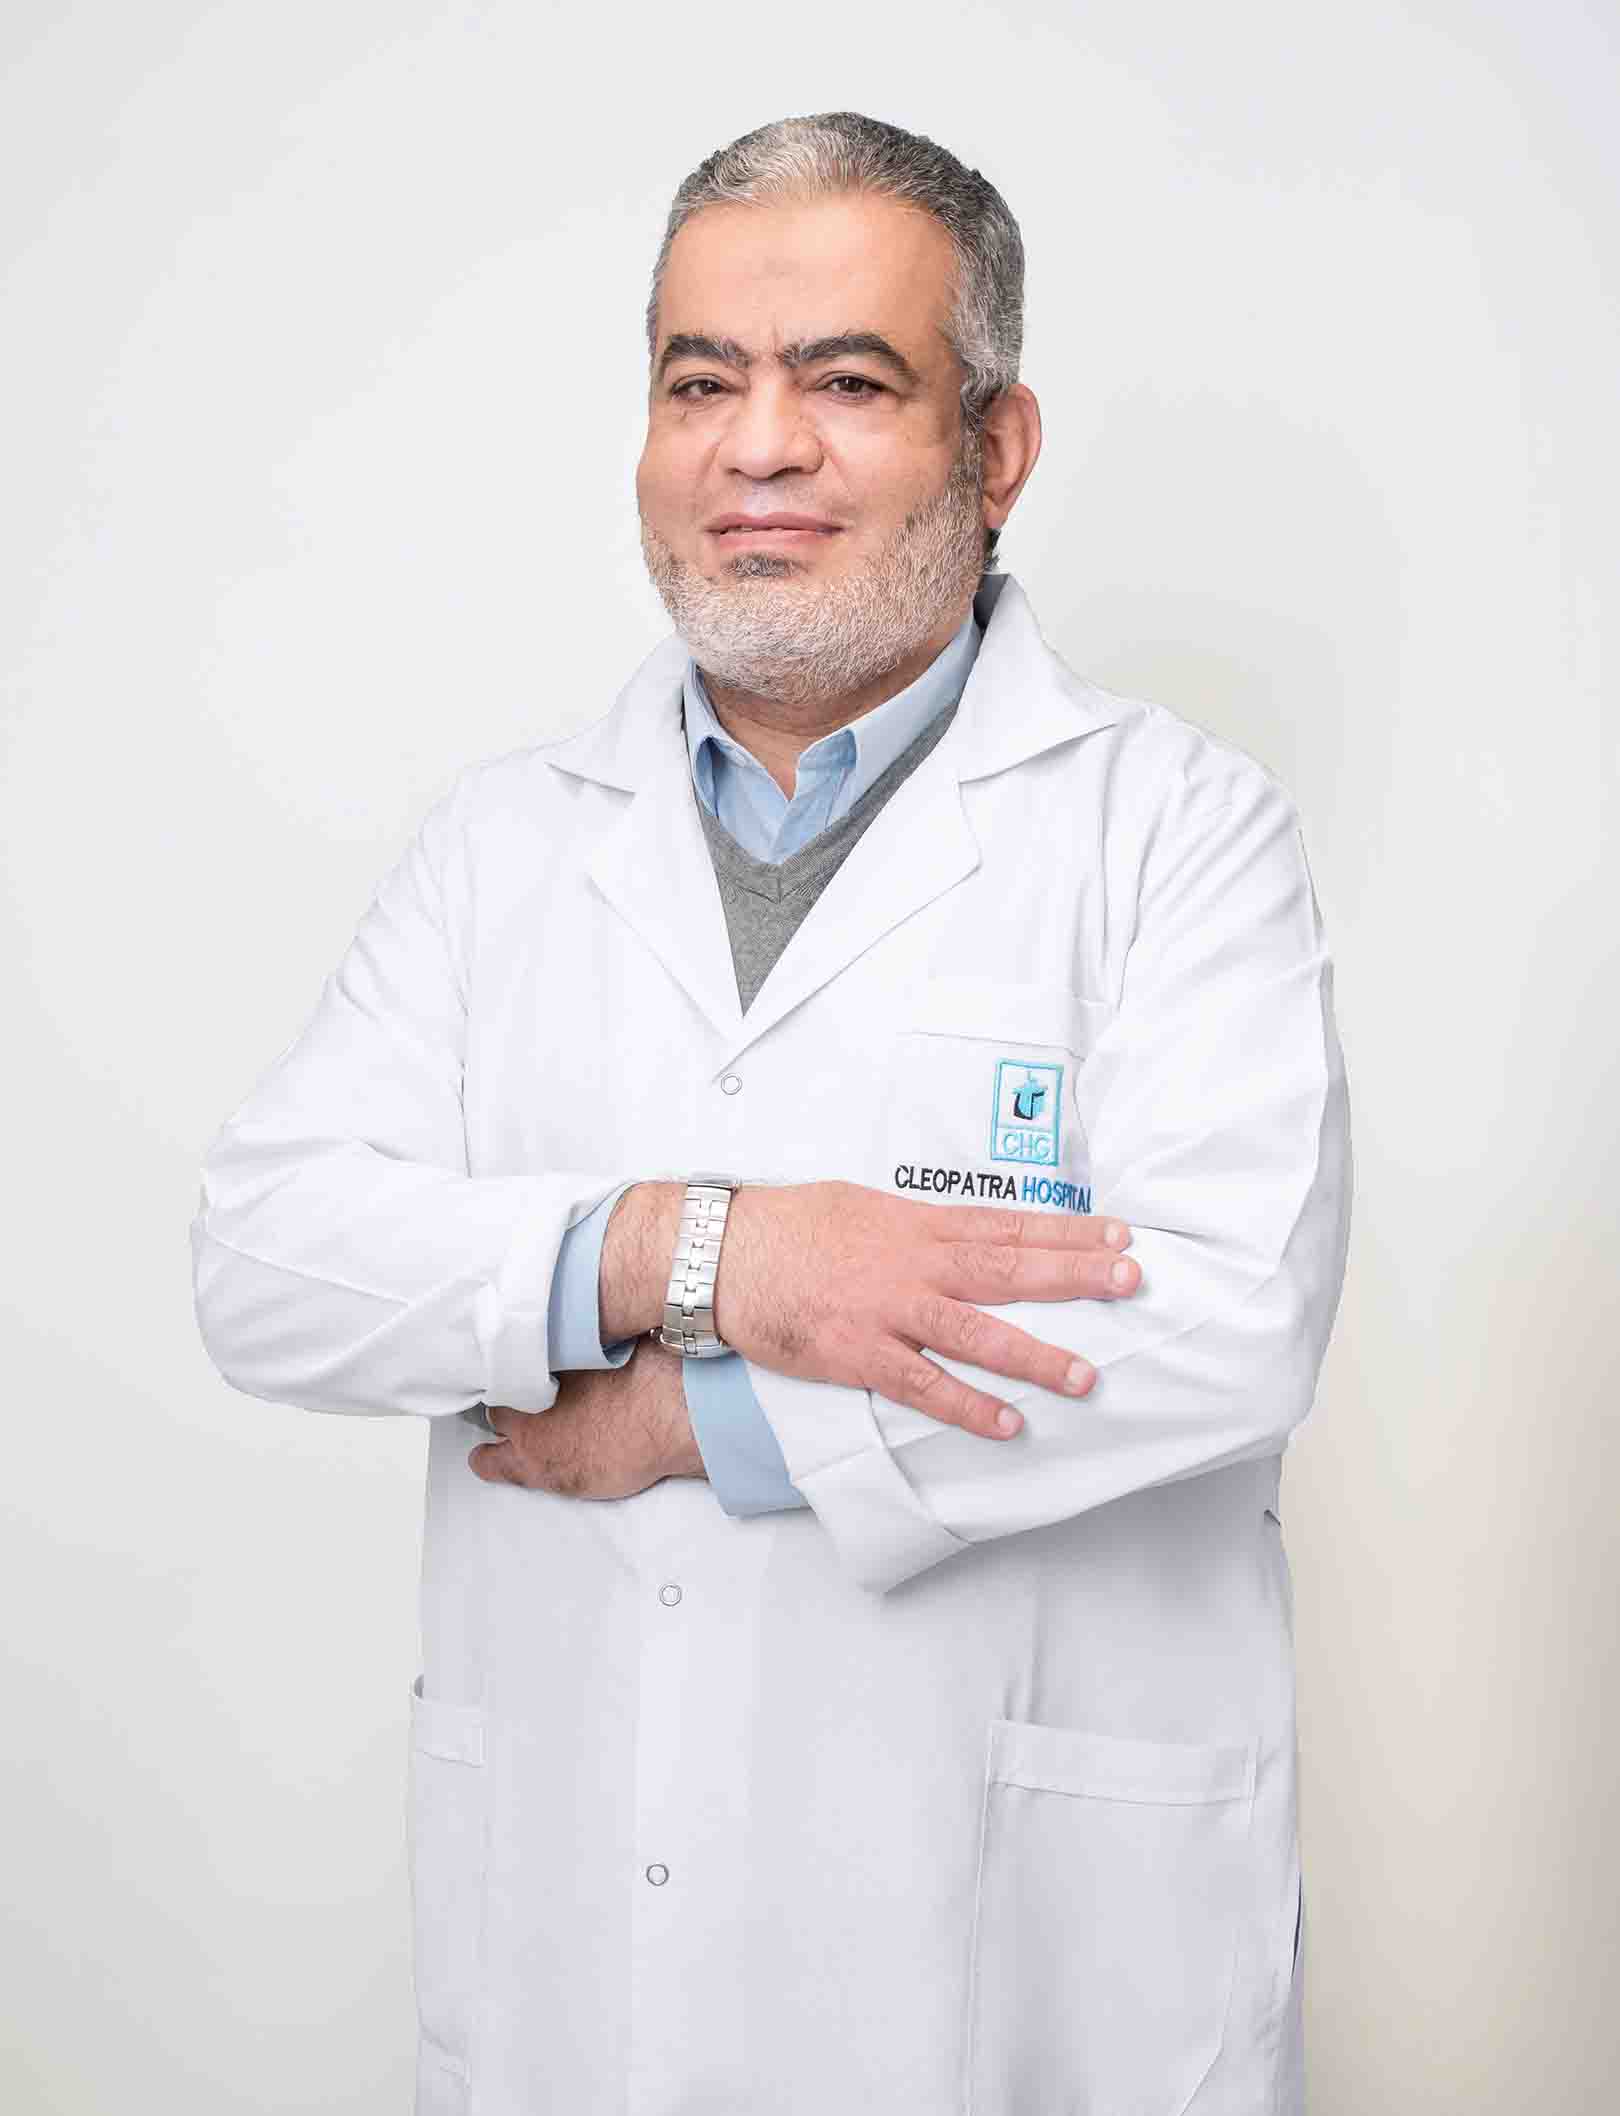 Dr. Ali Mohamed Azmy Abdel Hamid Omira